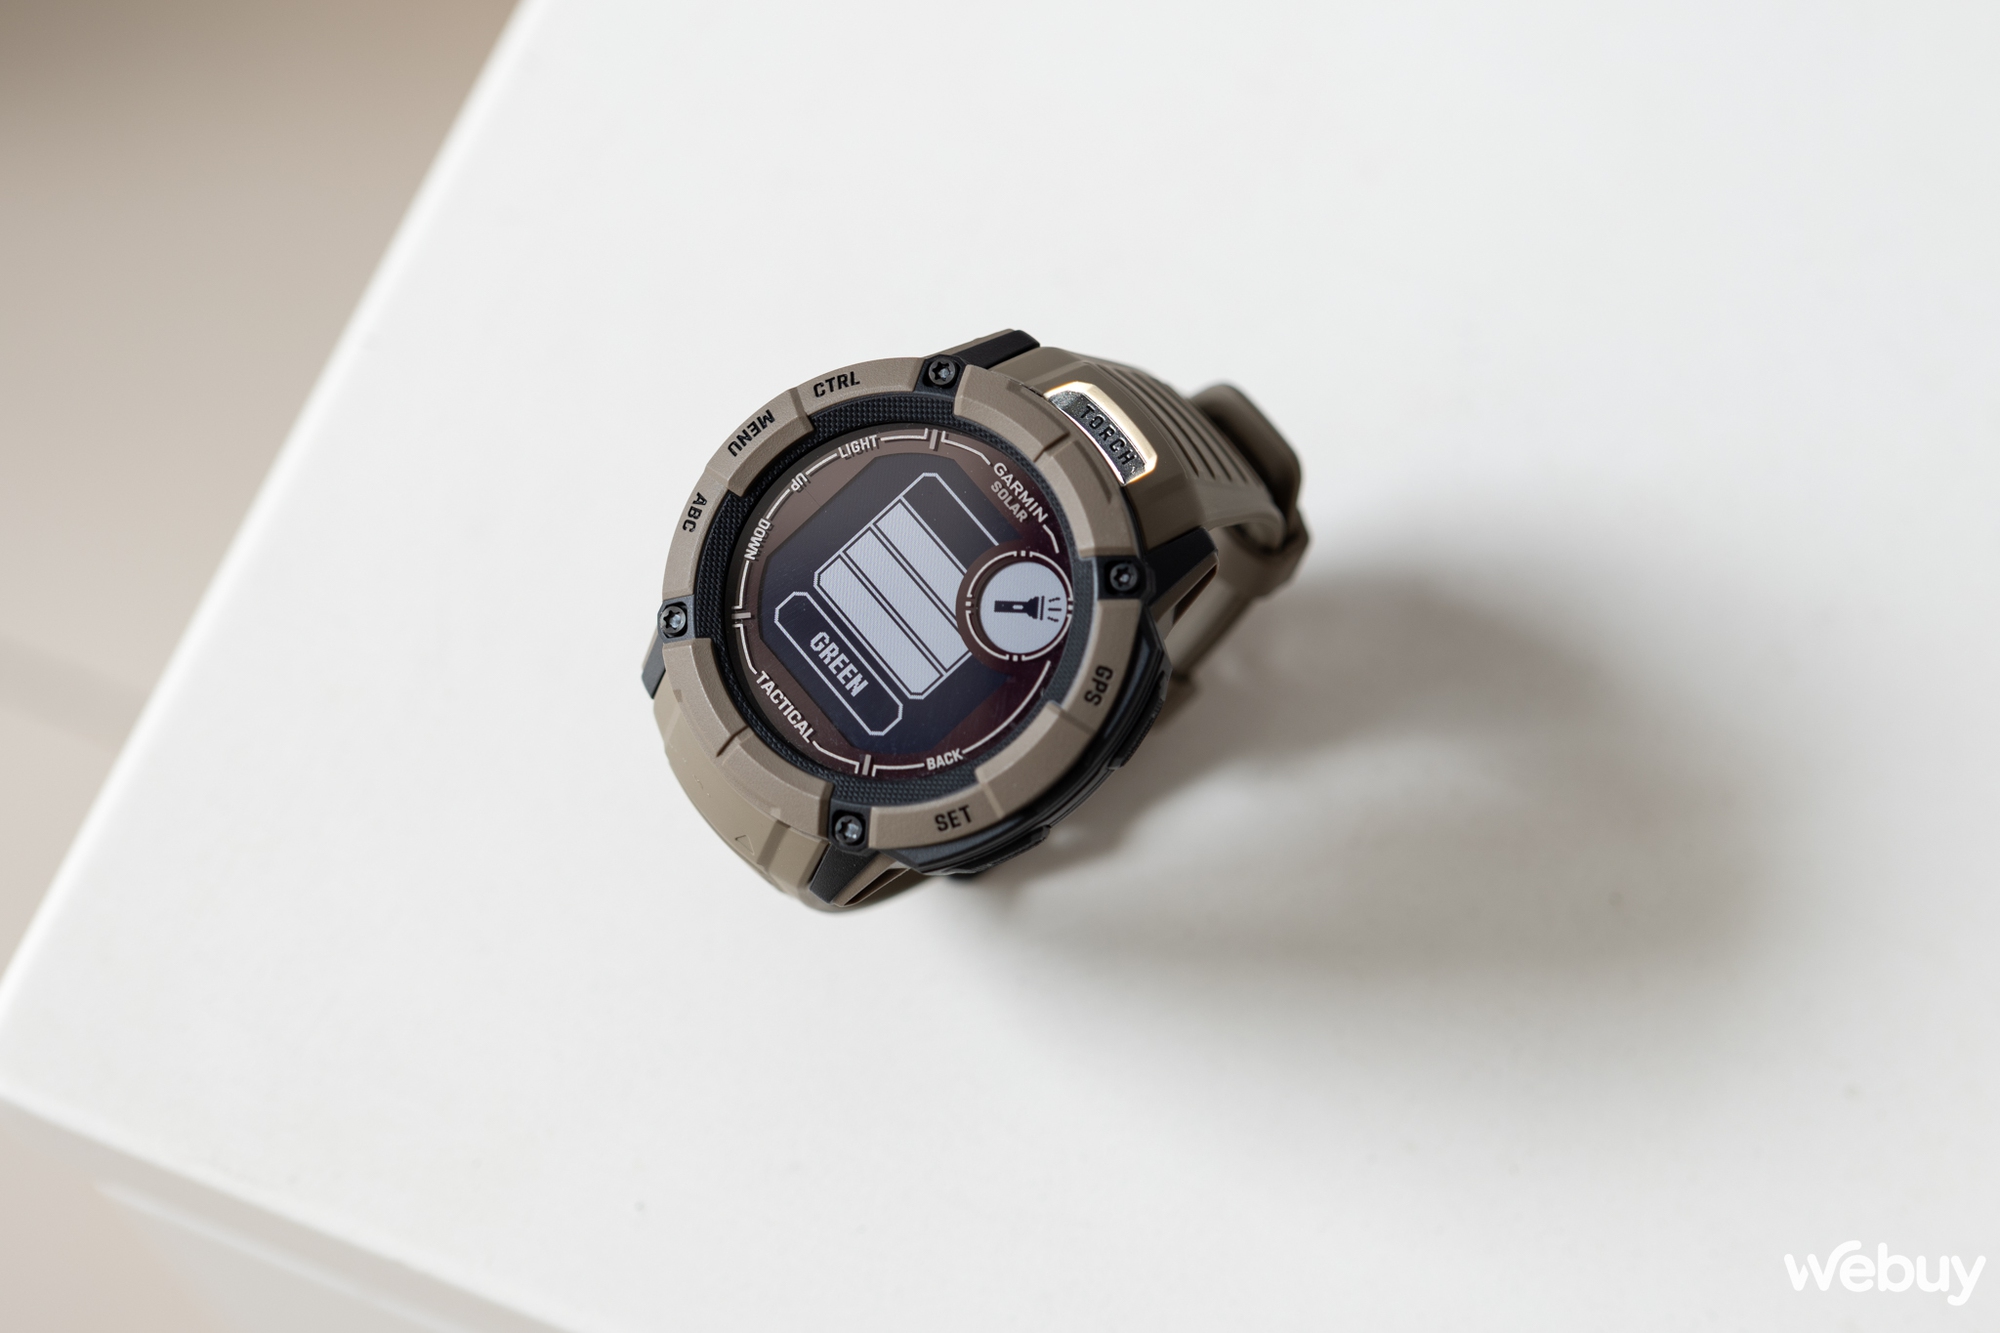 Garmin Instinct 2X Solar: Smartwatch siêu bền bỉ tích hợp đèn pin, sạc năng lượng mặt trời, giá từ 11,69 triệu đồng - Ảnh 5.